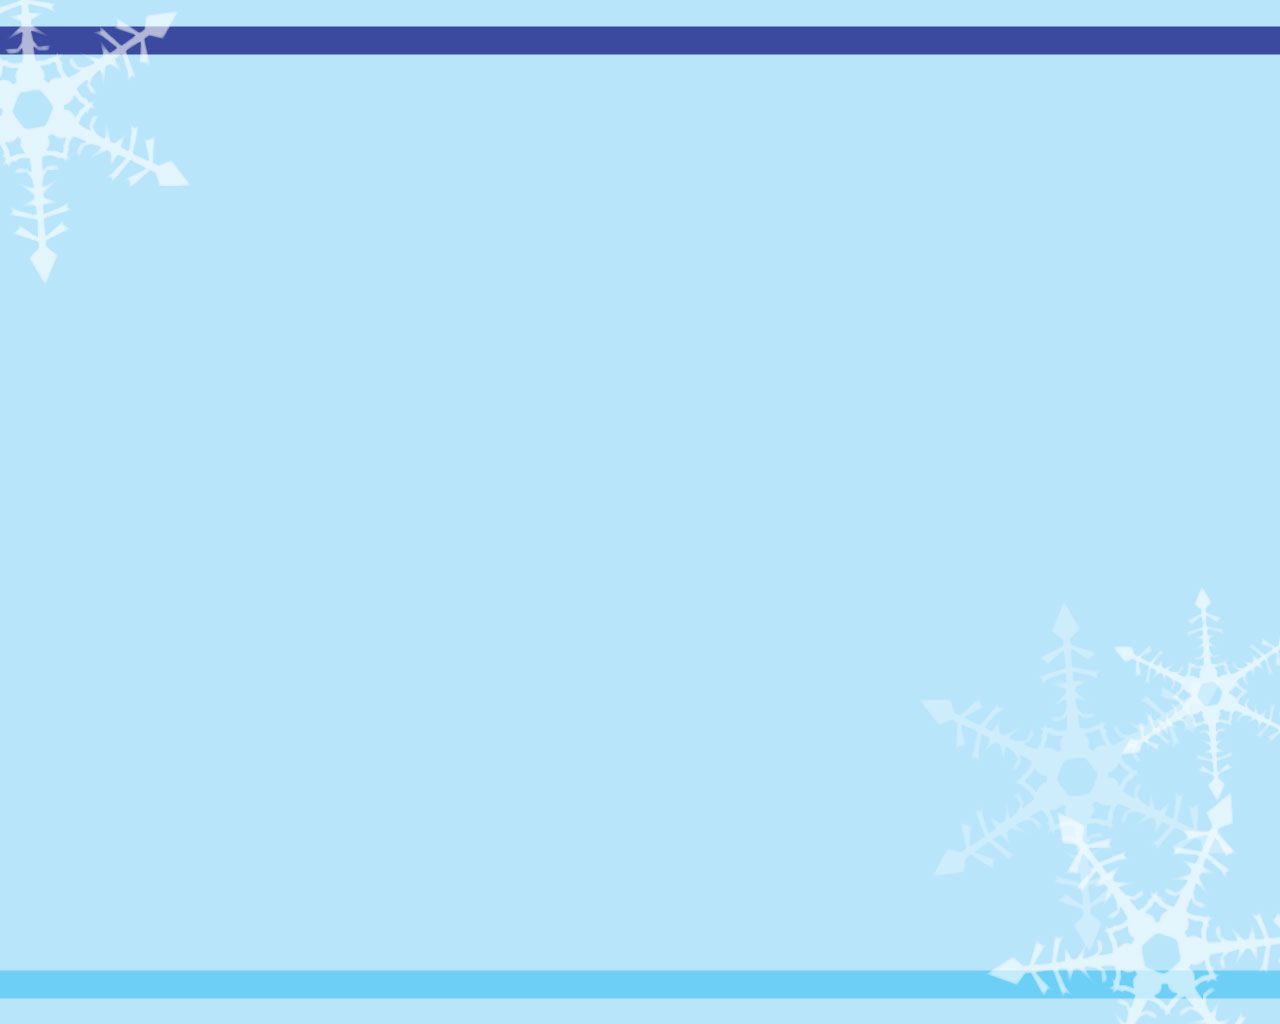 Christmas Theme Wallpaper: Chỉ còn vài ngày nữa là đến Giáng Sinh và bộ sưu tập hình nền Giáng Sinh sẽ đem lại cho bạn một không gian ấm áp và ngập tràn cảm xúc đón chào ngày lễ hội đặc biệt này. Hãy cài đặt hình nền Giáng Sinh cho desktop của bạn để thêm phần phấn khích và cảm hứng.